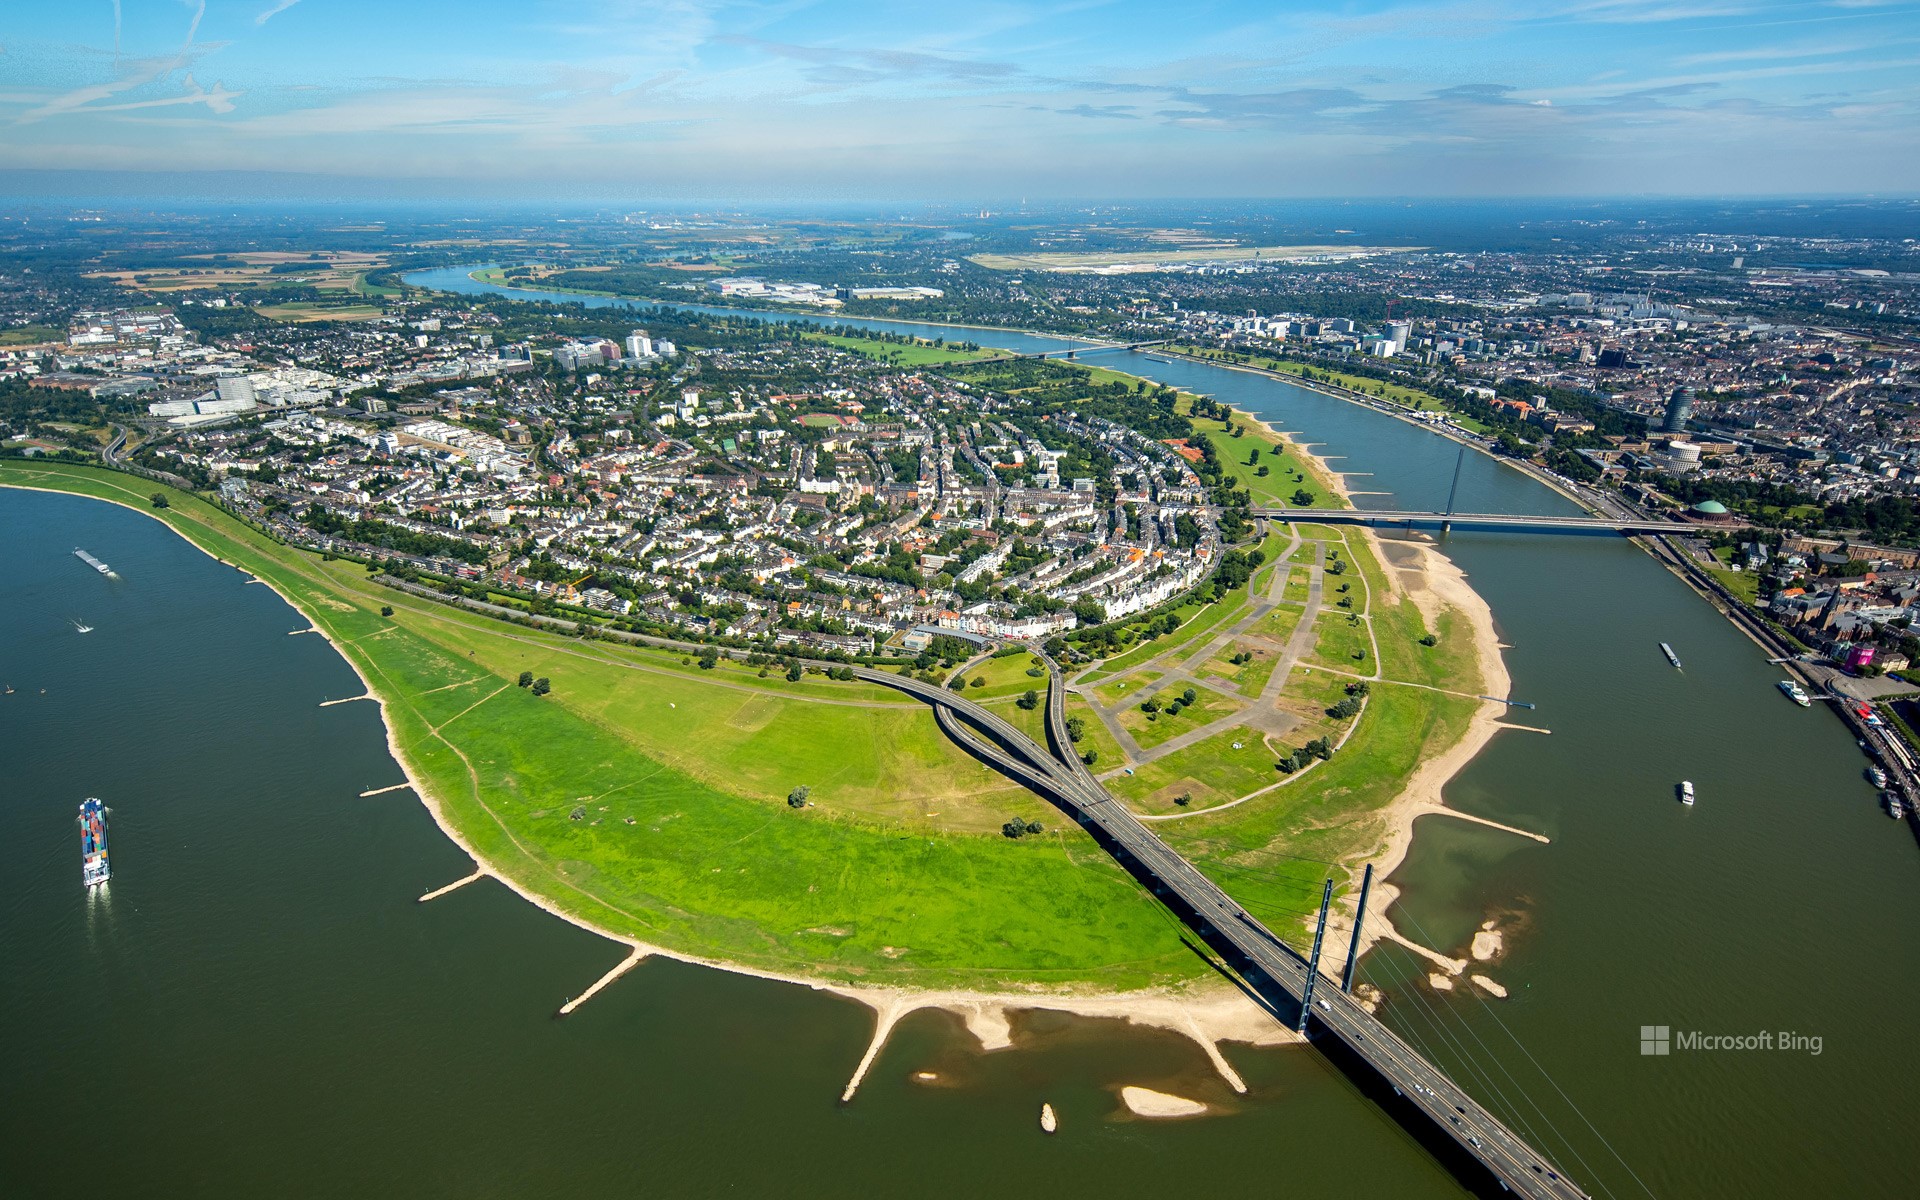 Aerial view of the Oberkassel district of Düsseldorf with the Rheinknie Bridge and the Oberkasseler Bridge, North Rhine-Westphalia